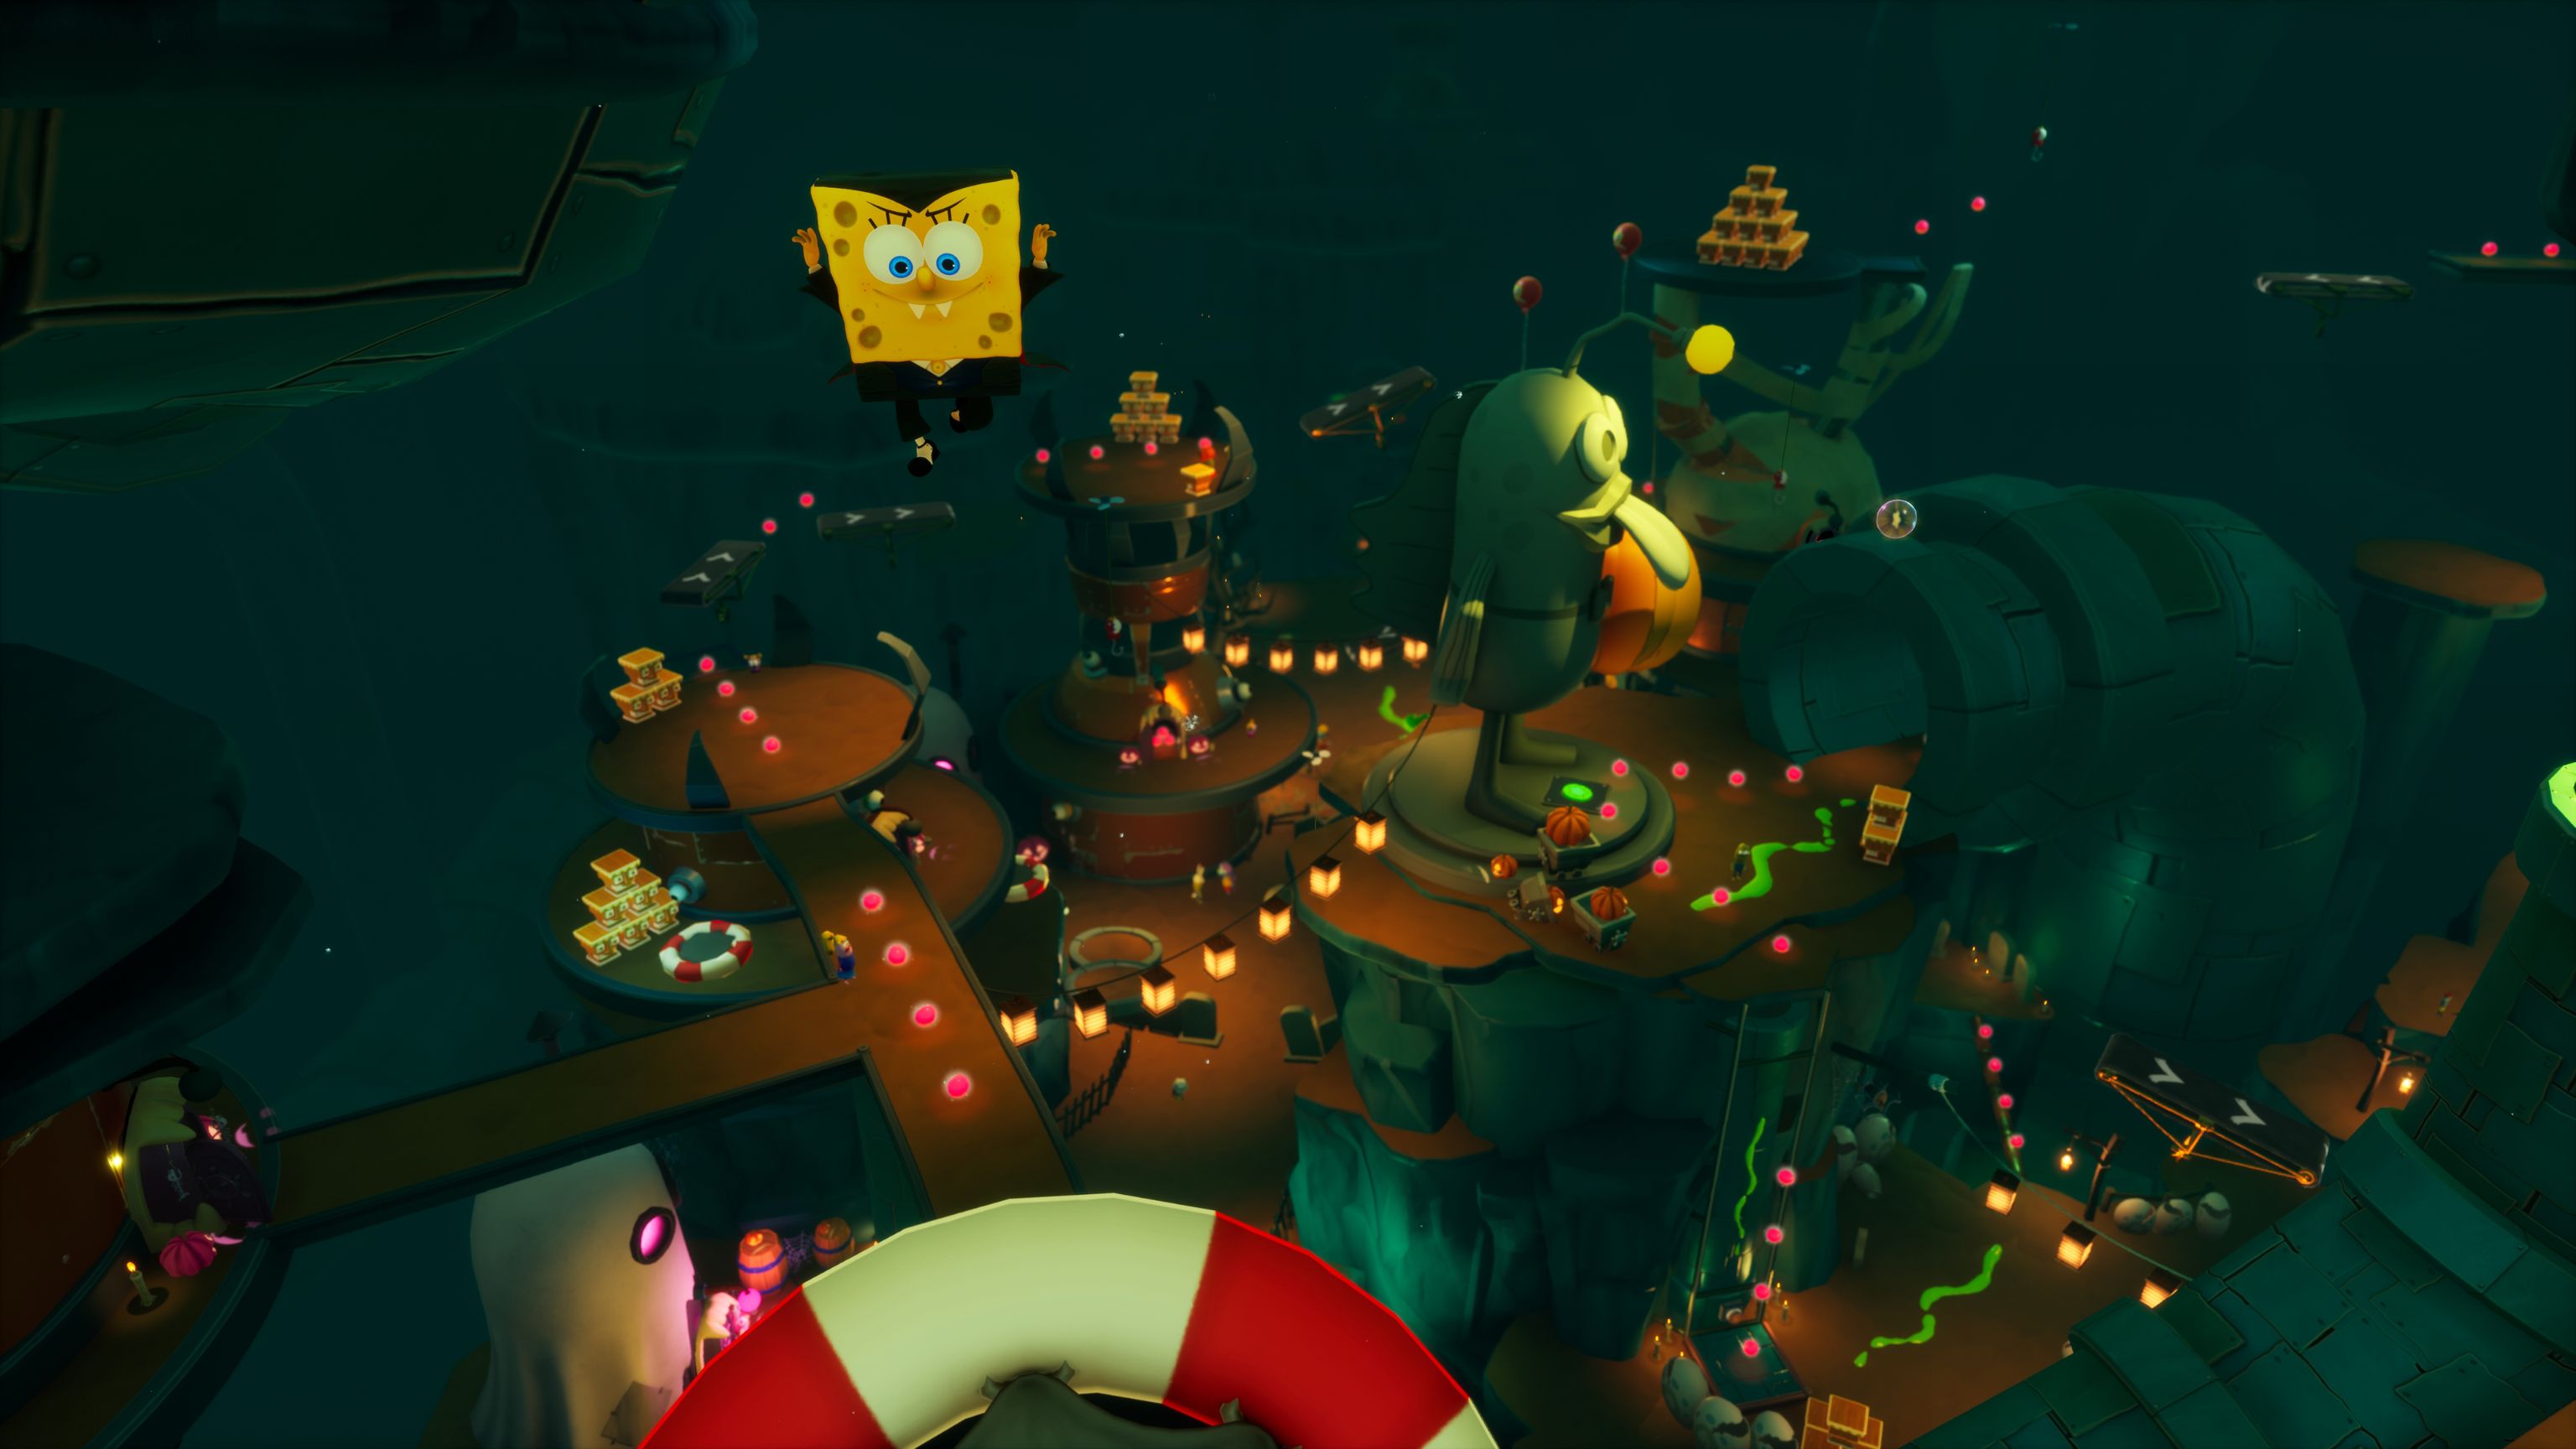 PS4 Spongebob Squarepants: The Cosmic Shake